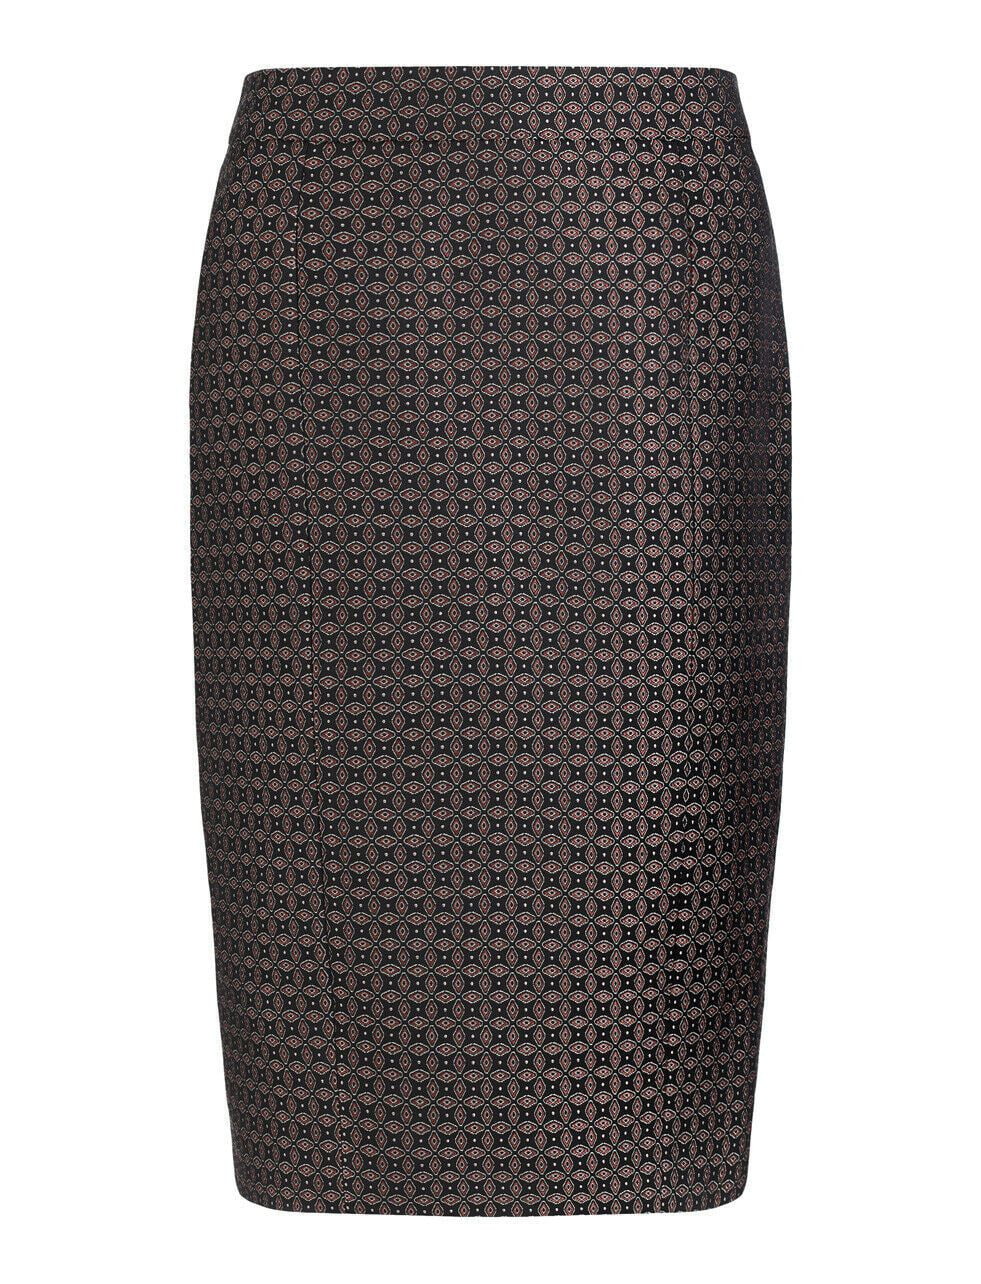 JOSEPH Cravat Jacquard Black Burgundy Pencil Skirt UK 6 US 2 EU 34 BNWT Timeless Fashions